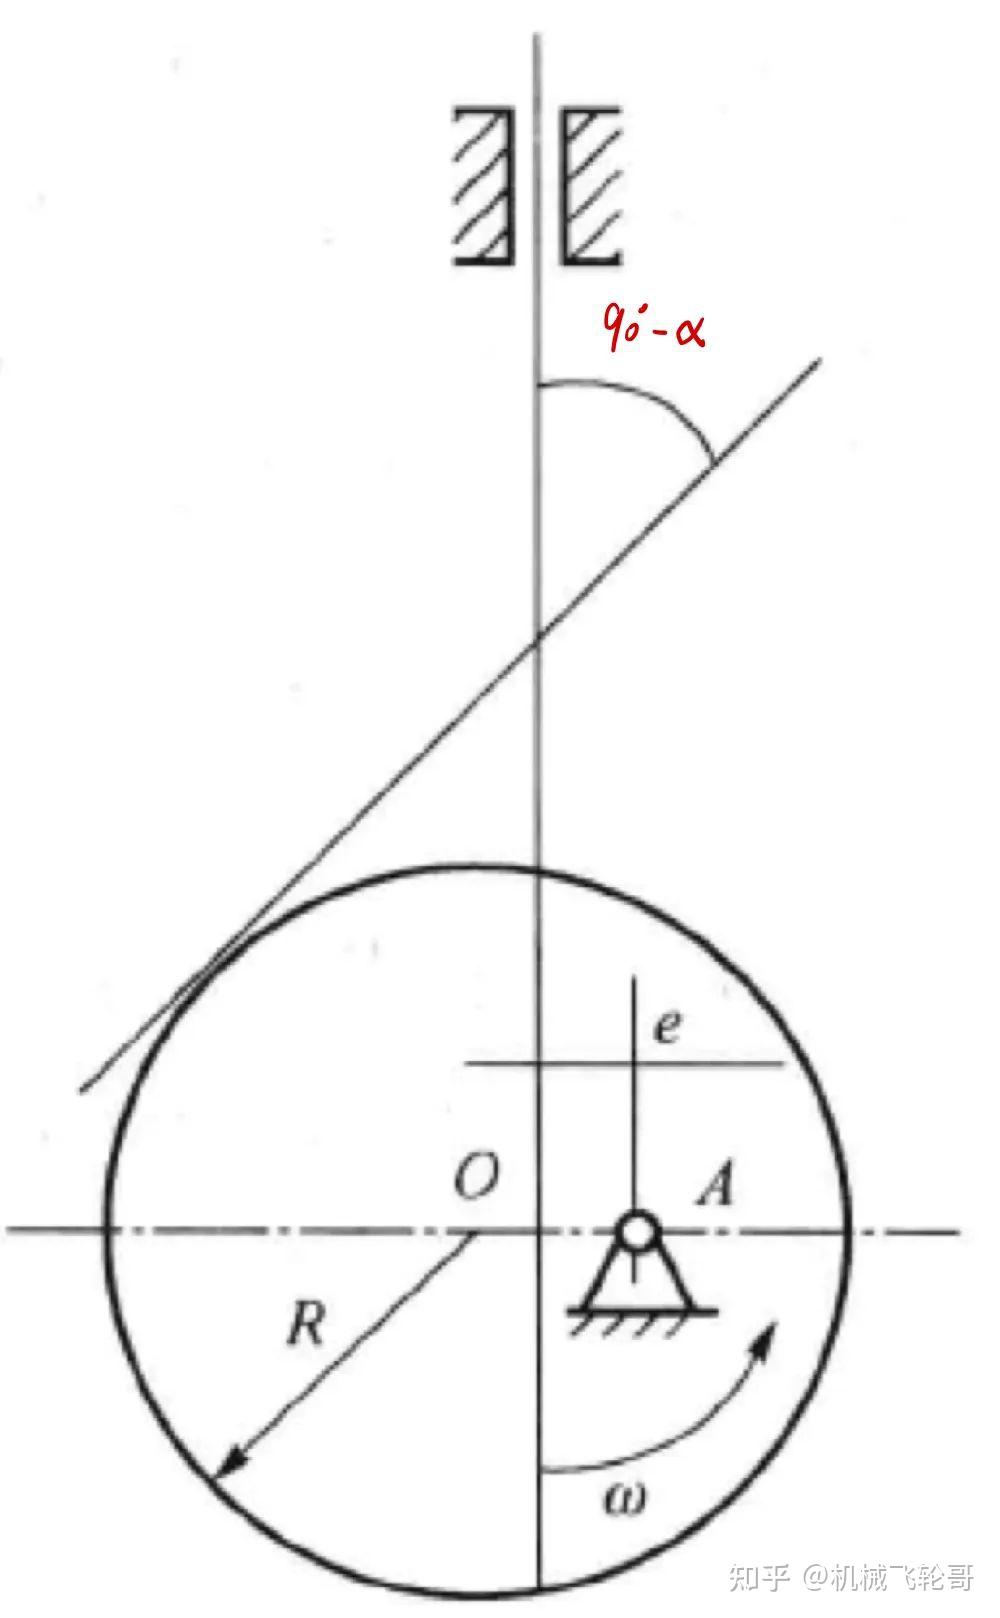 凸轮作图题要有以下几个考点:1, 标出基圆,理论廓线,偏距圆;2, 画出